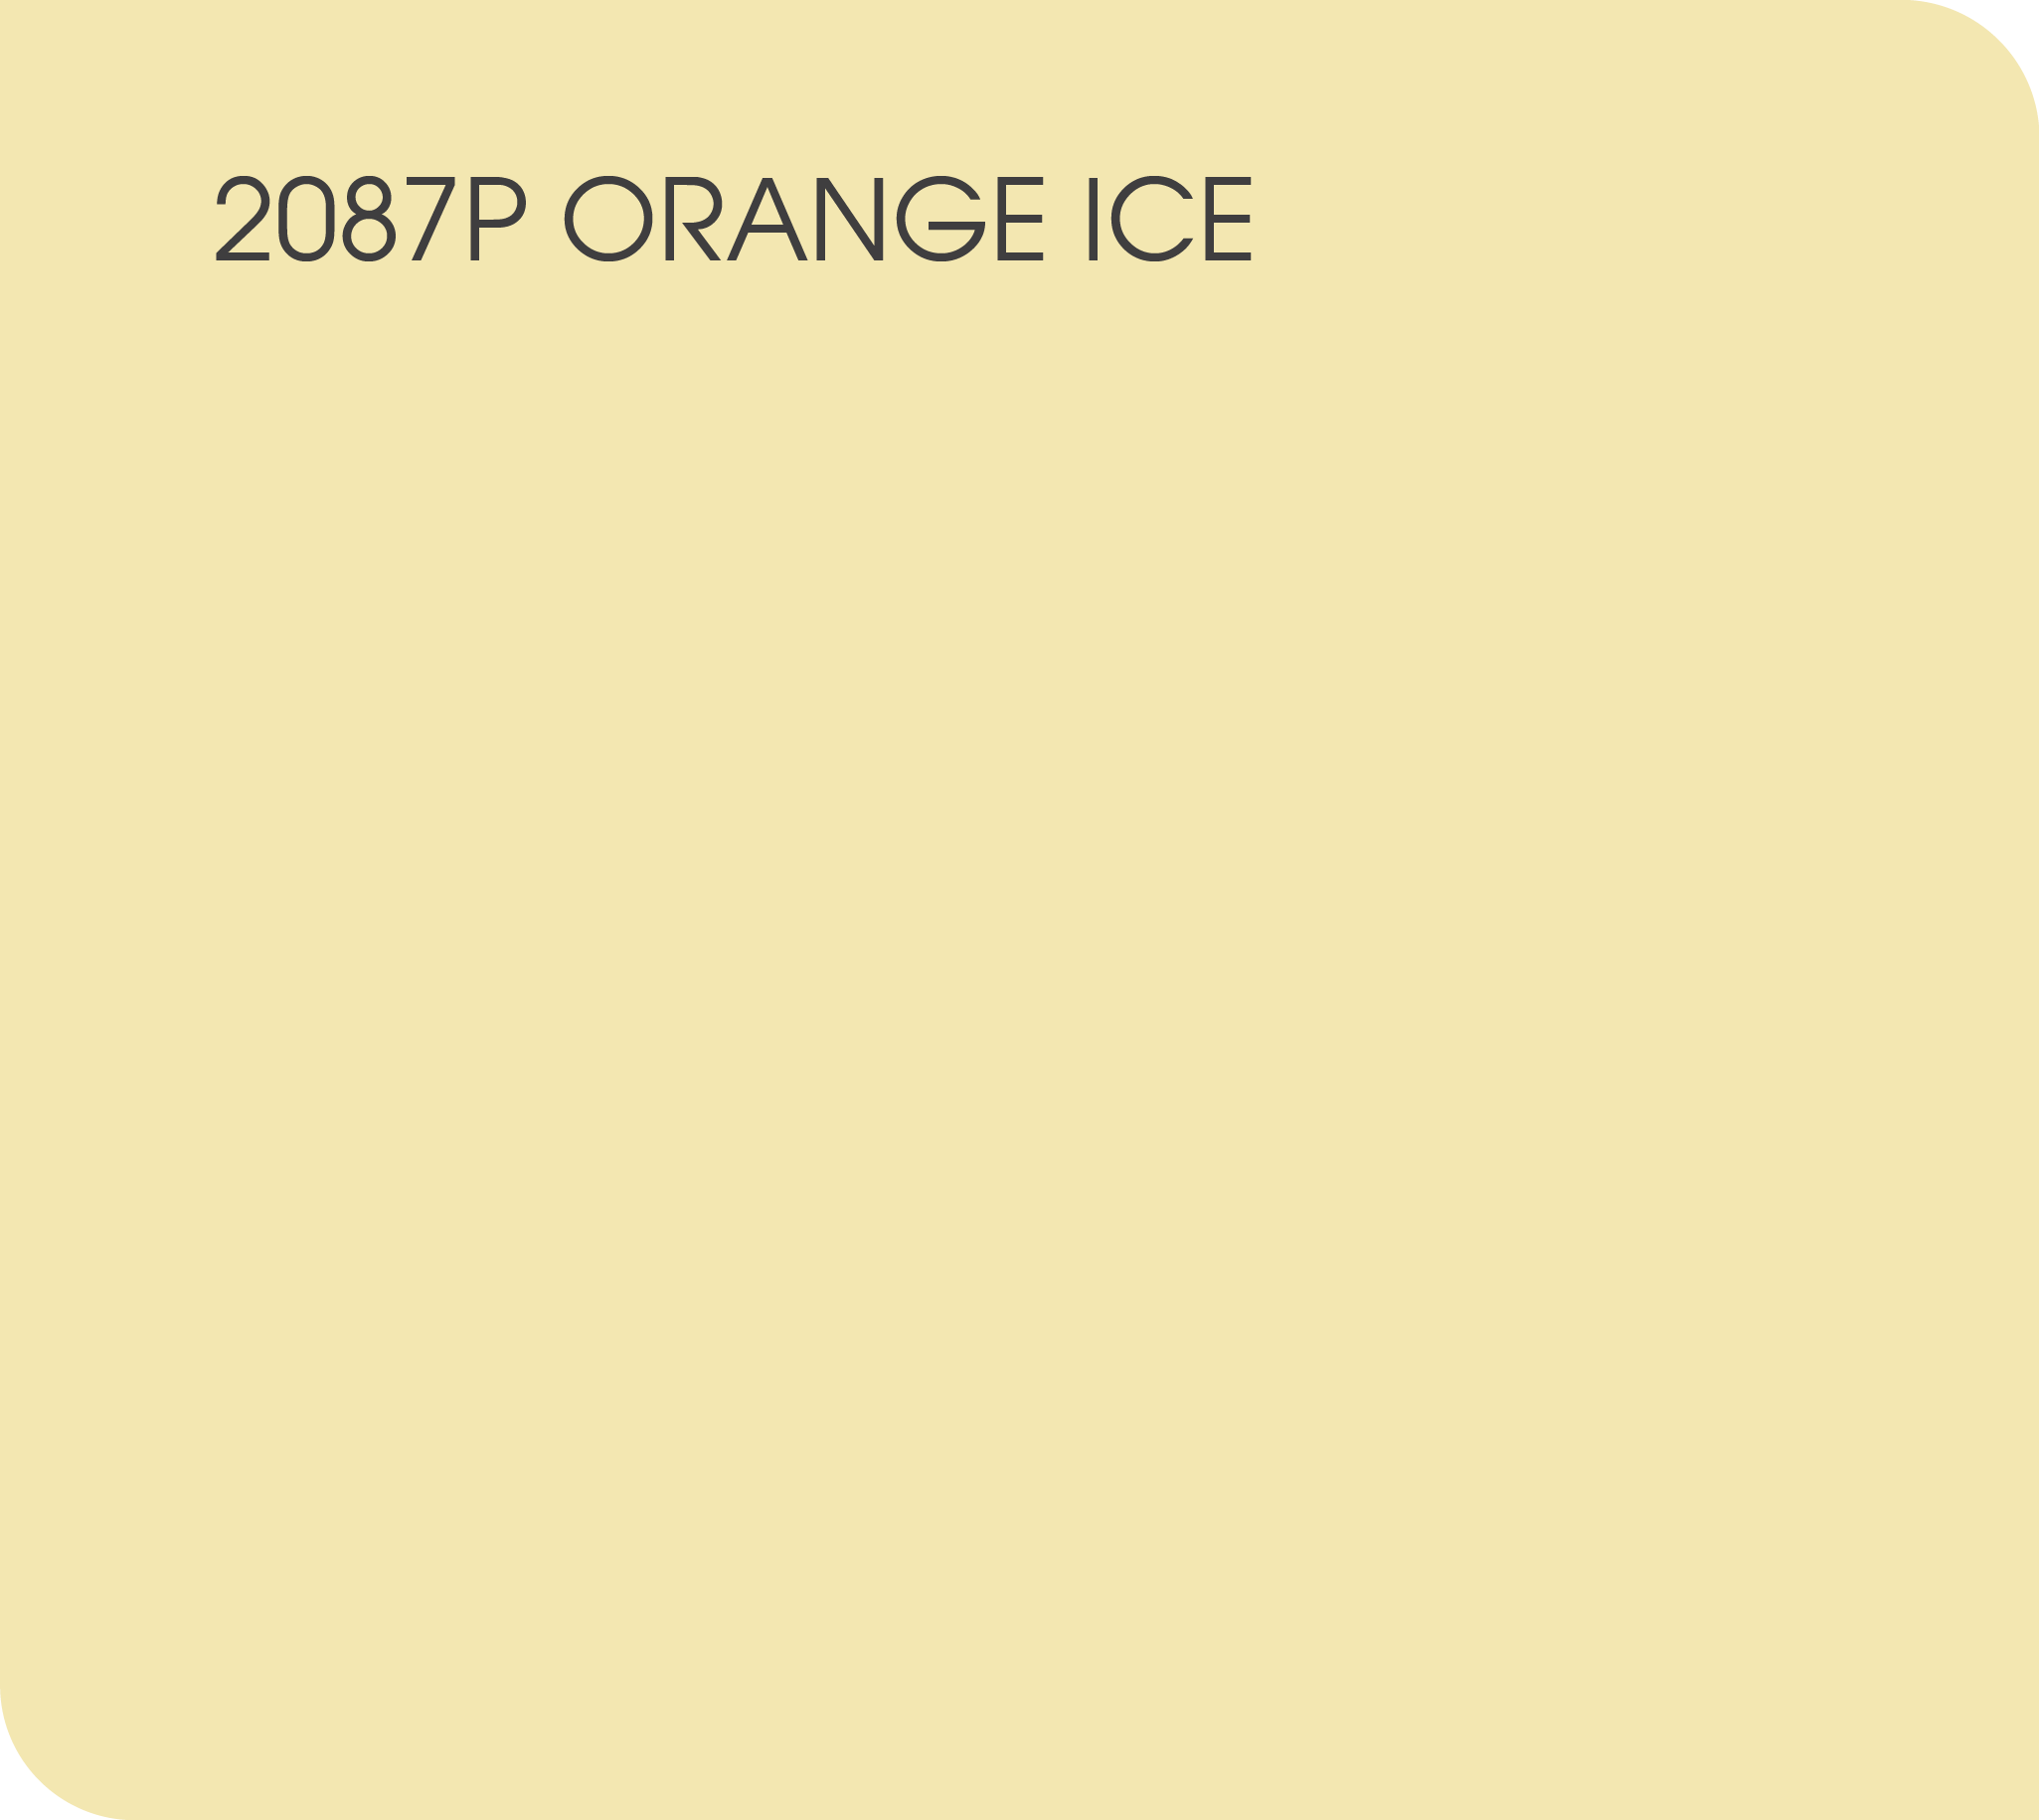 ORANGE ICE